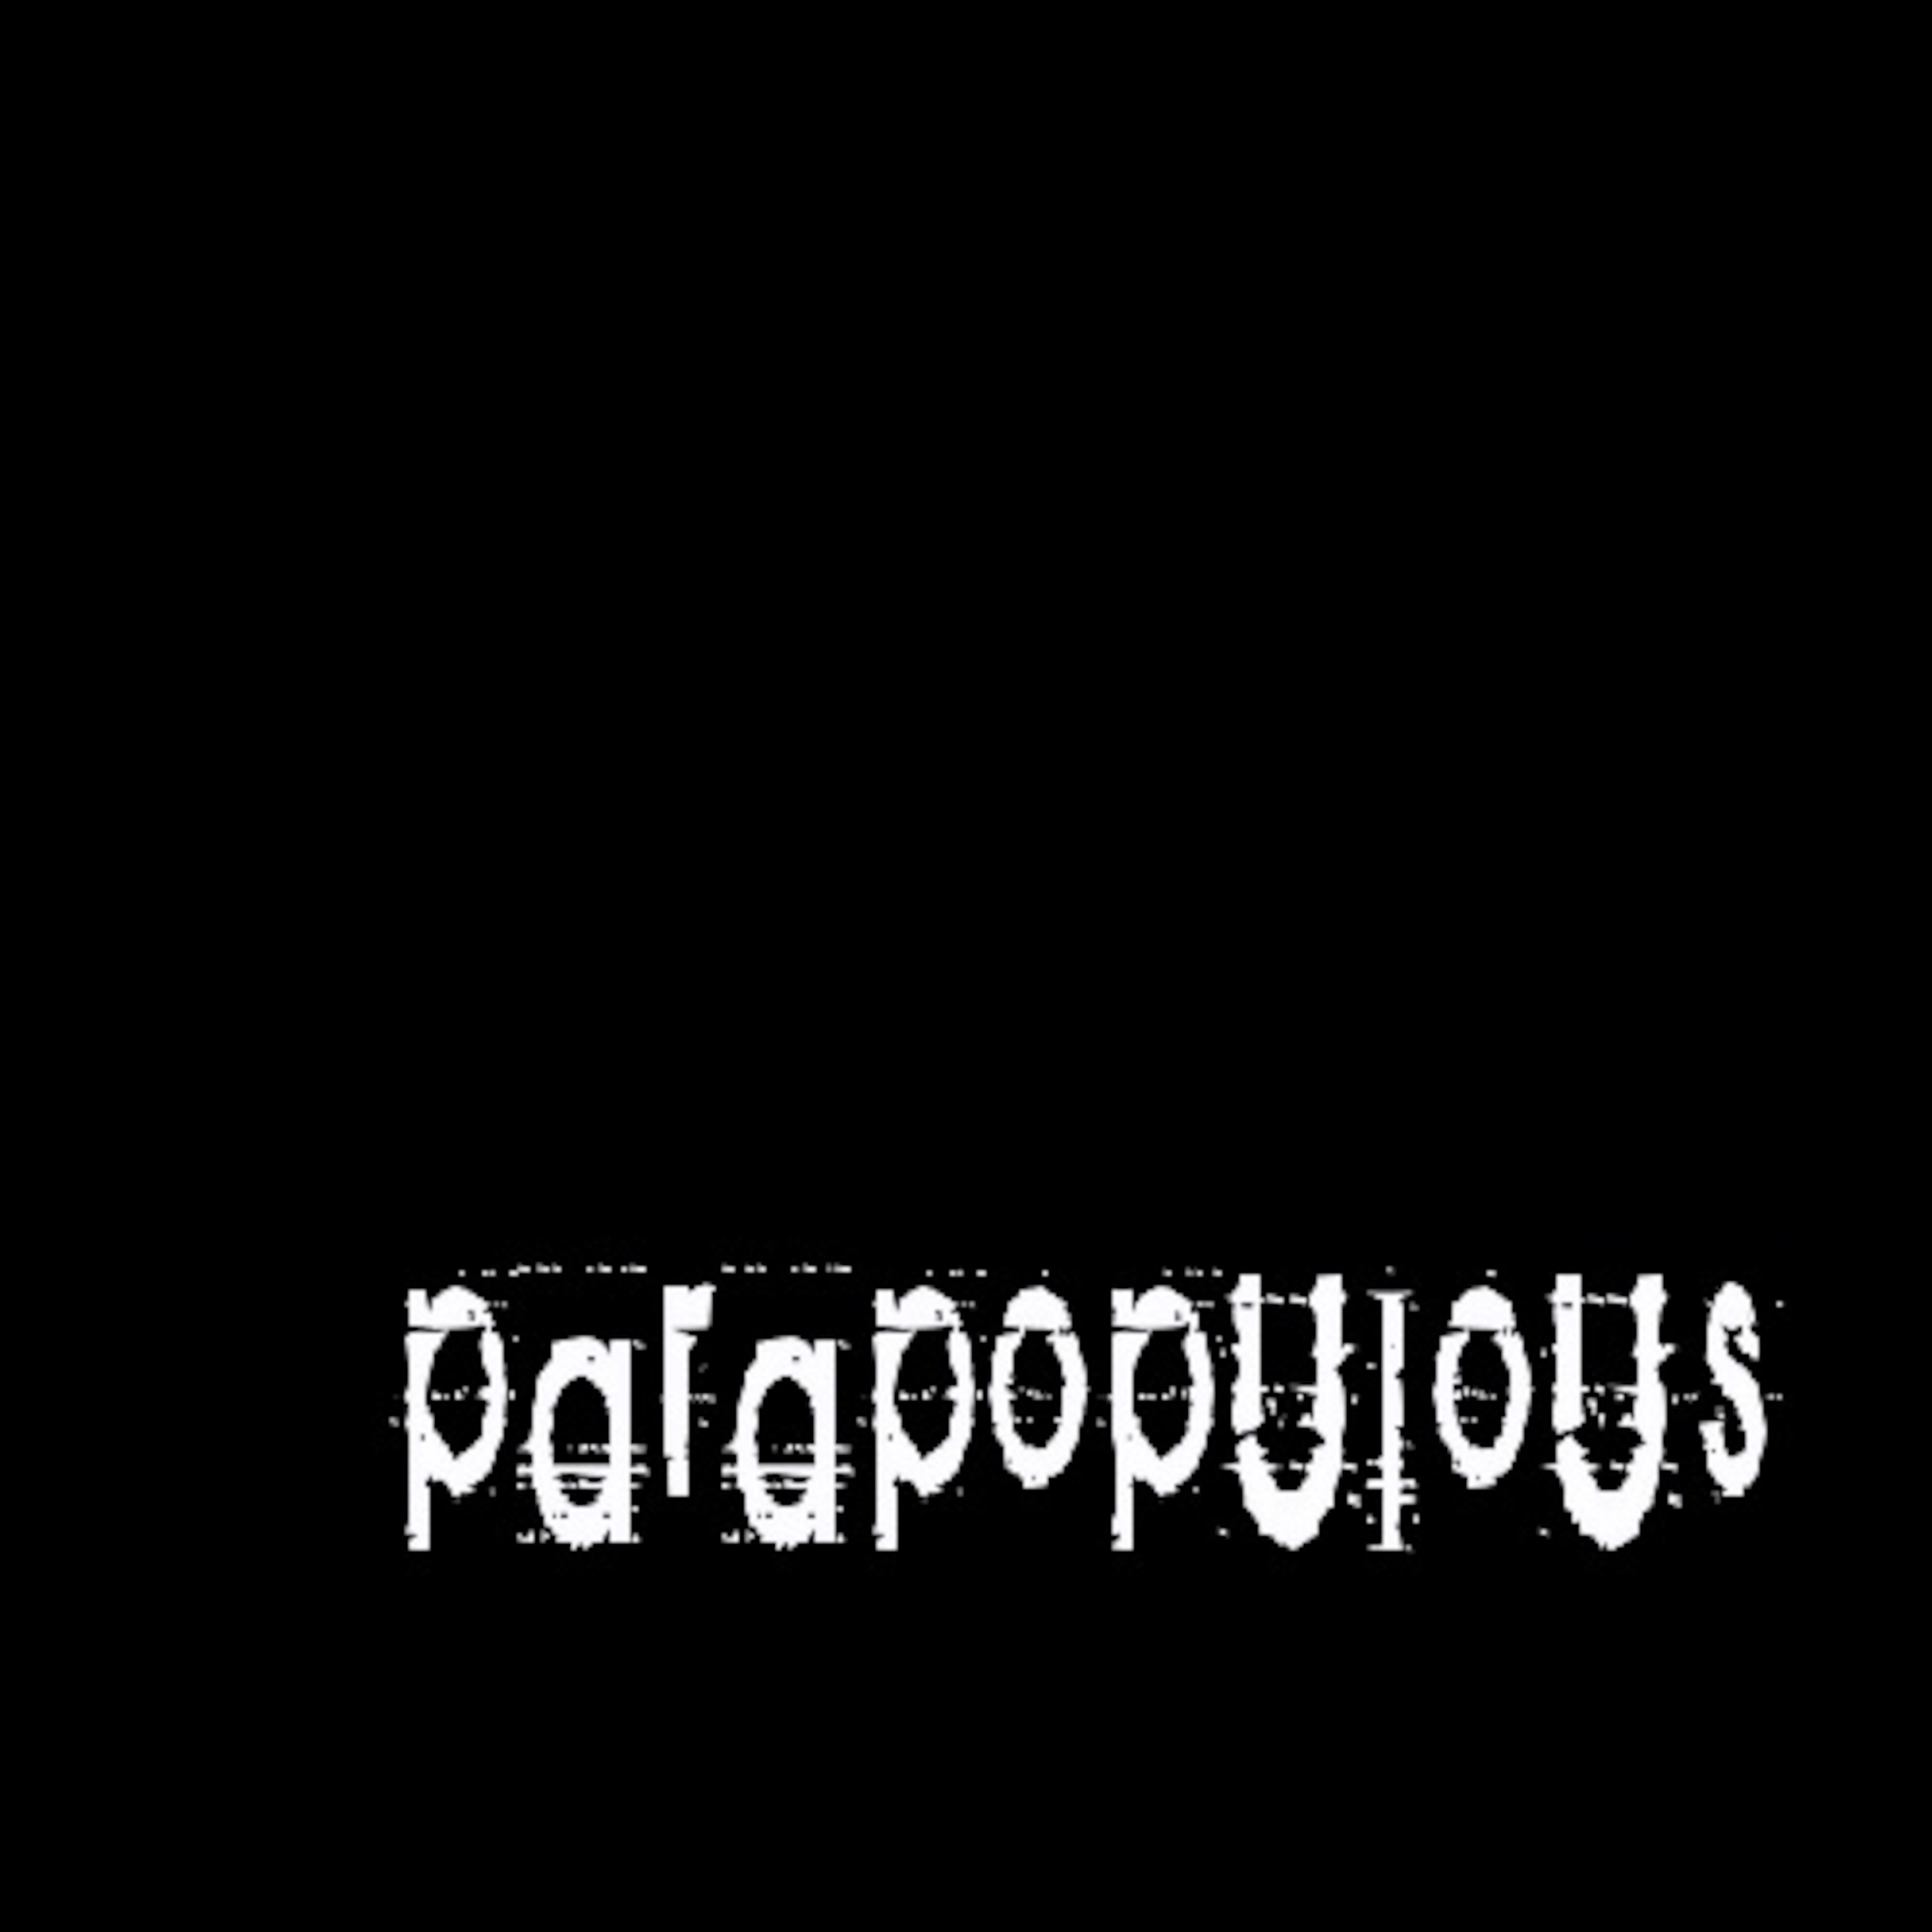 Parapopulous - the podcast version